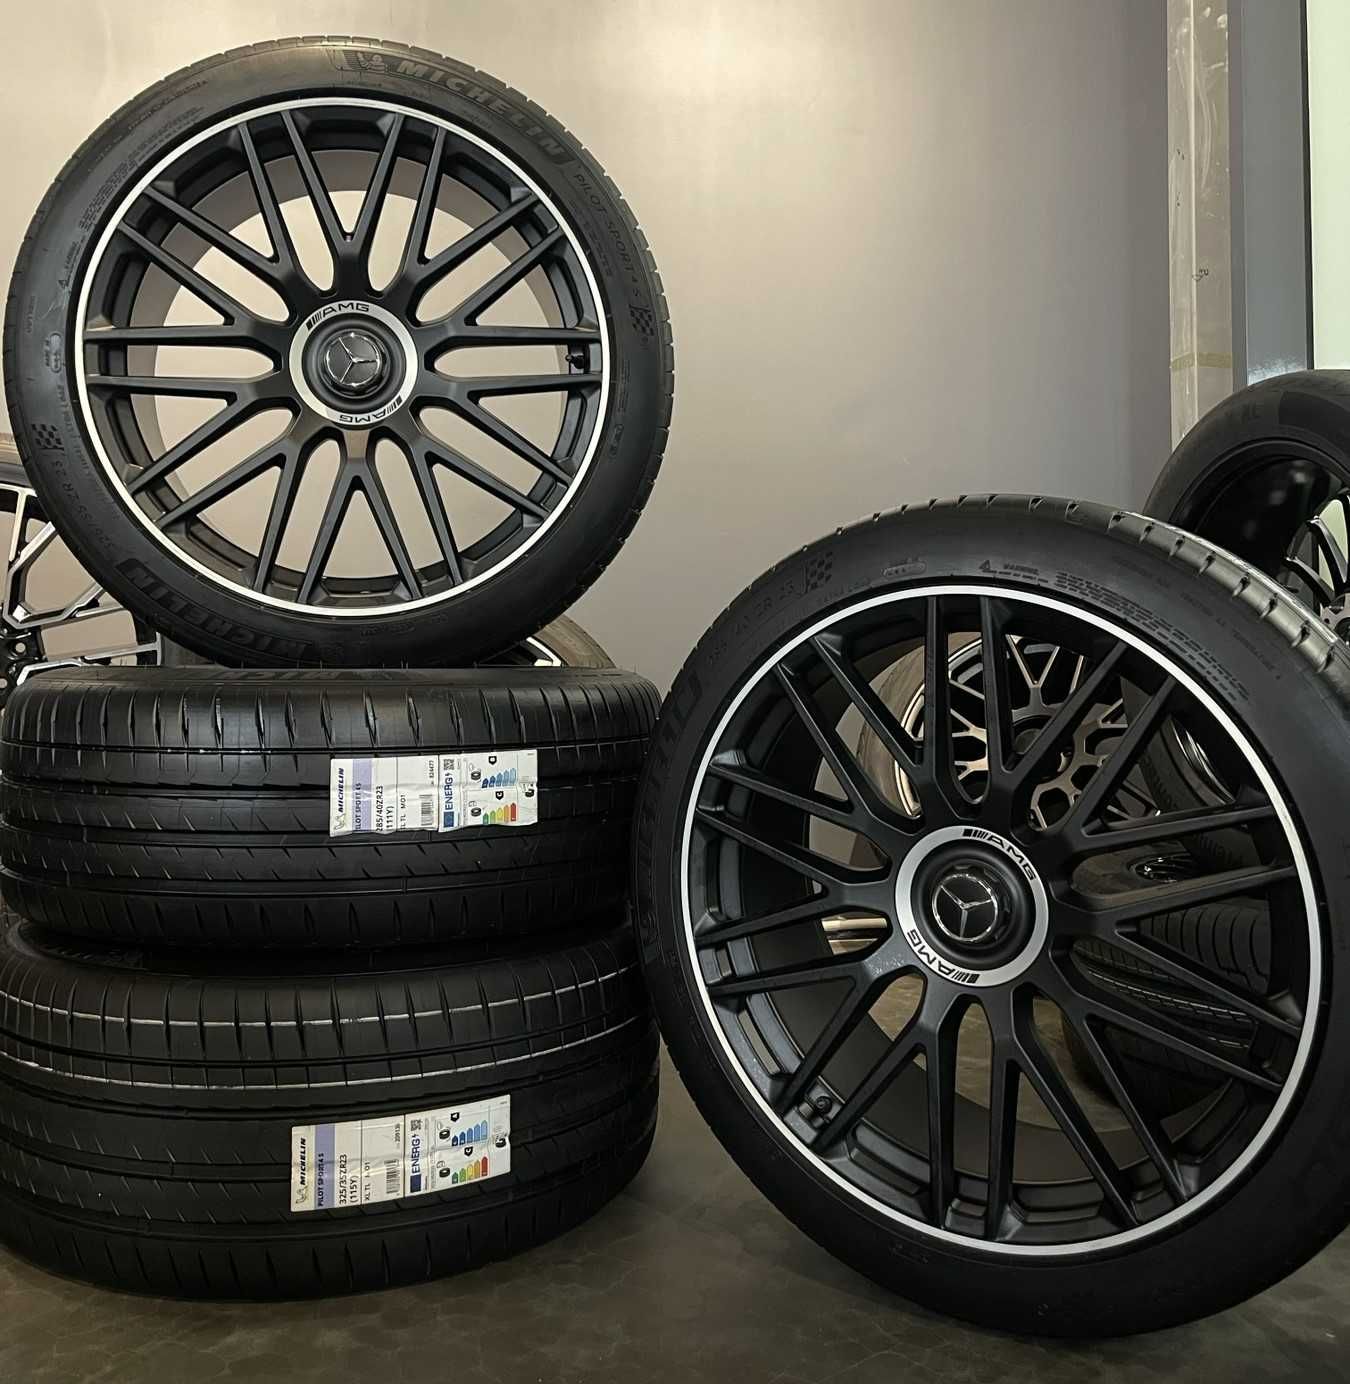 Оригинальный комплект диски + шины Michelin R23 на Mercedes GLS X167